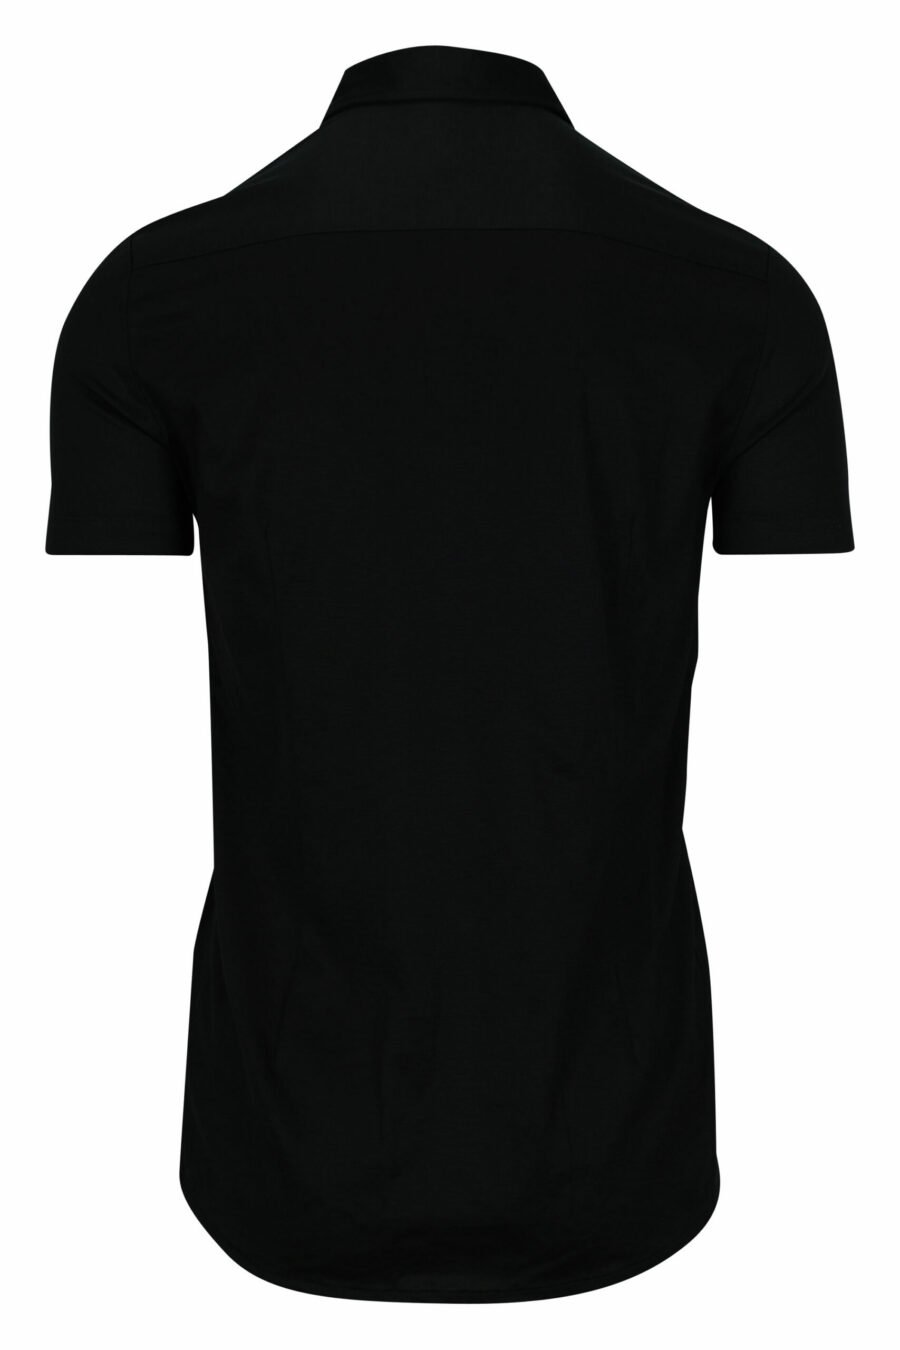 Camisa preta de manga curta com o mini logótipo da águia - 8056861420206 1 scaled